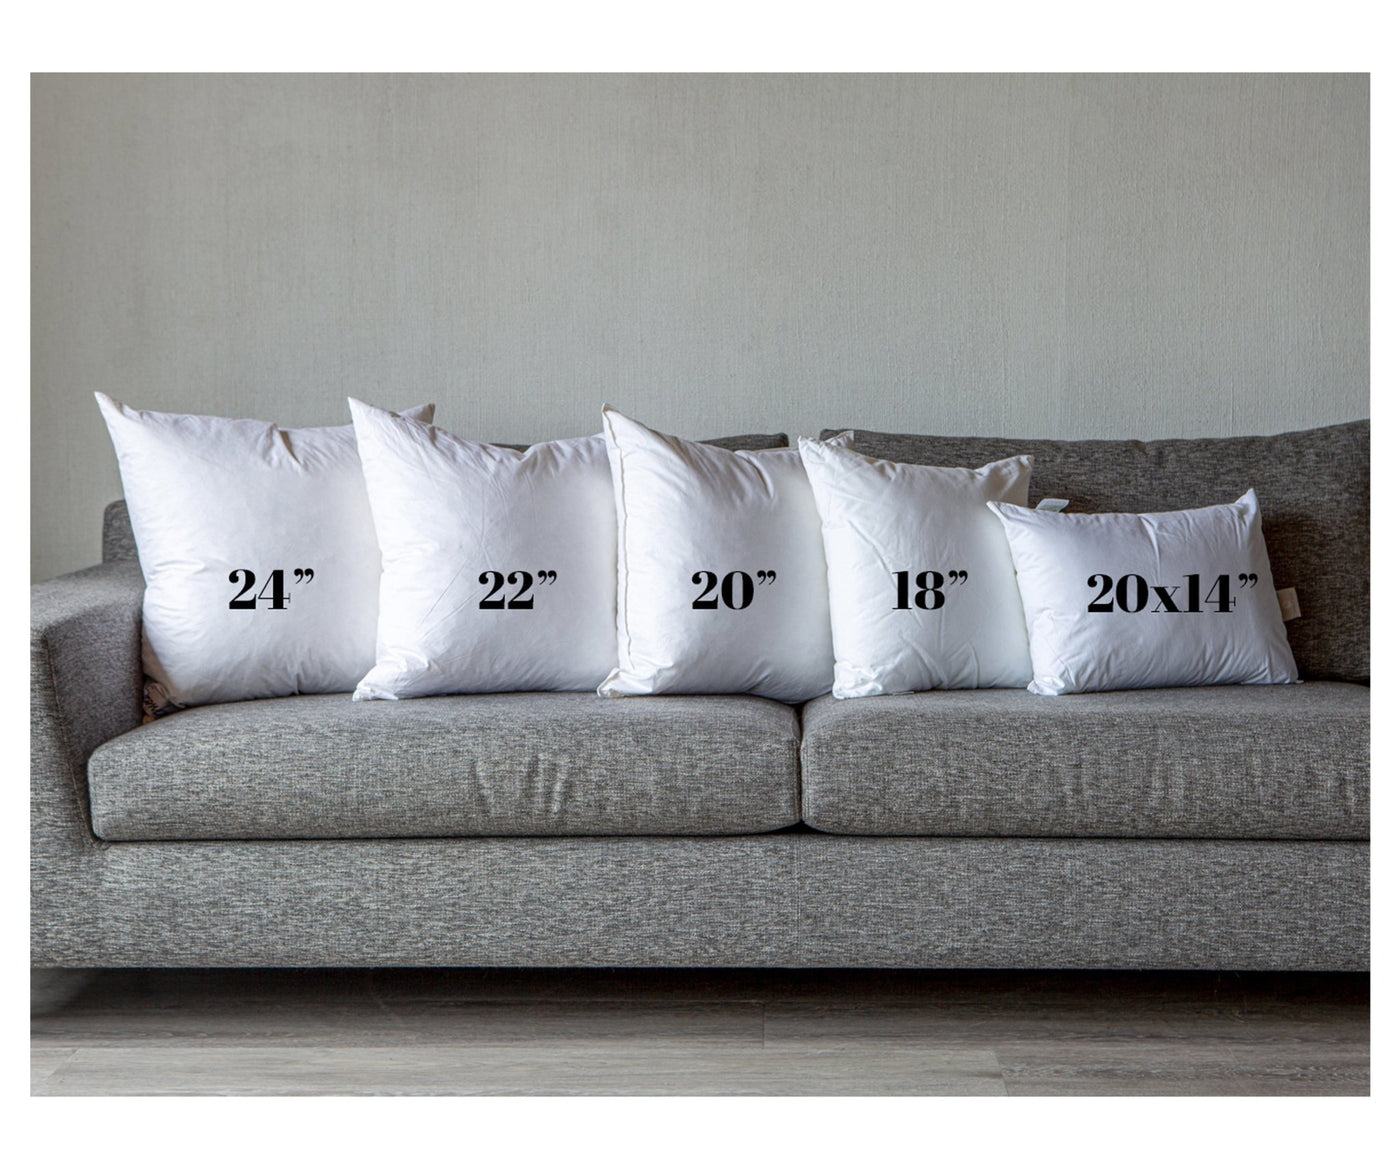 14" x 20" Toss Pillow (Made to Order) - Pillow